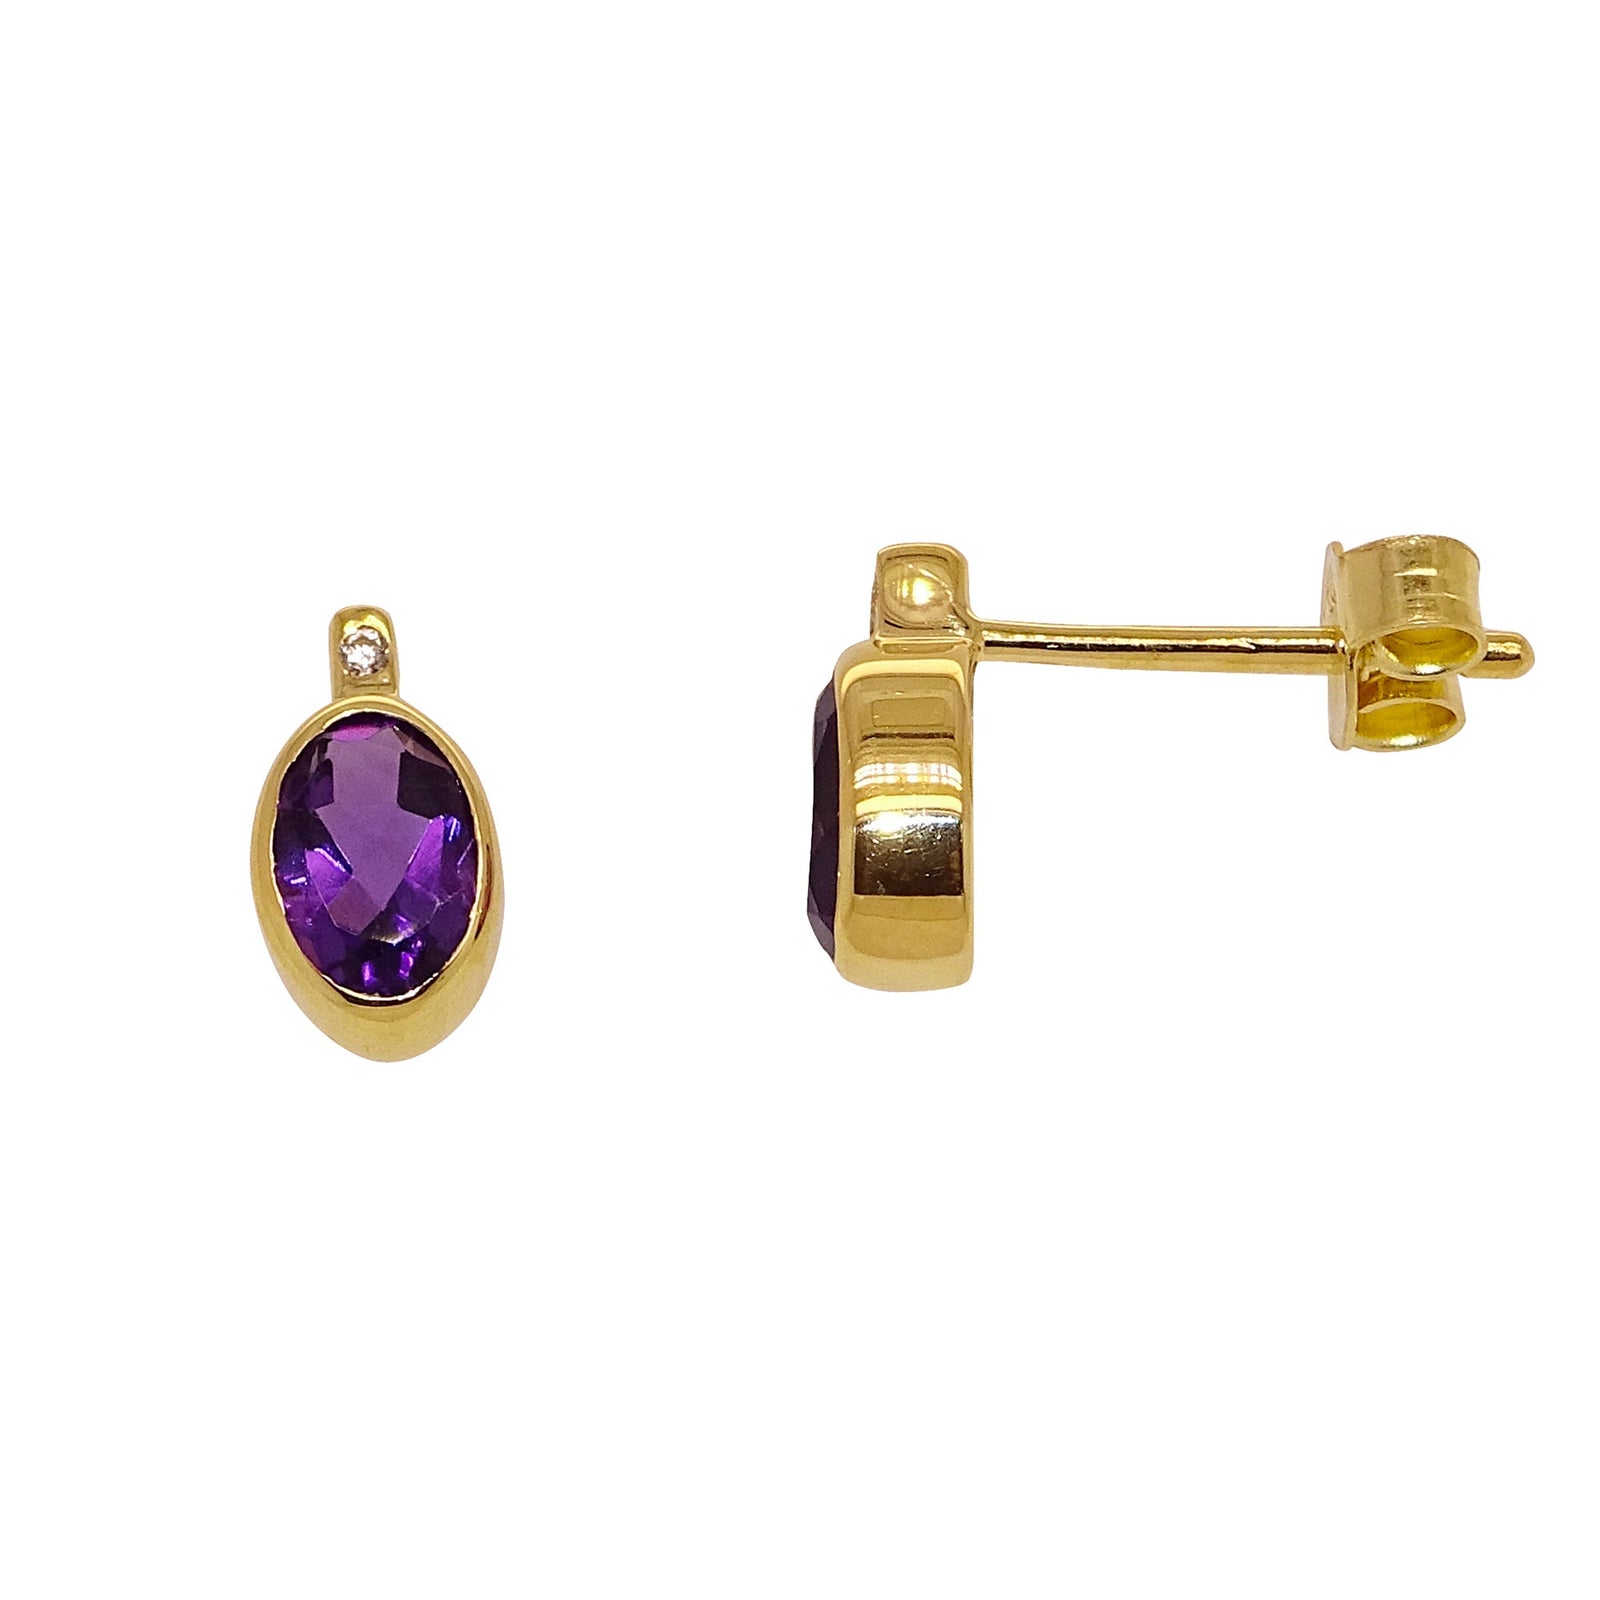 9ct gold 6mm oval amethyst & cz stud earrings